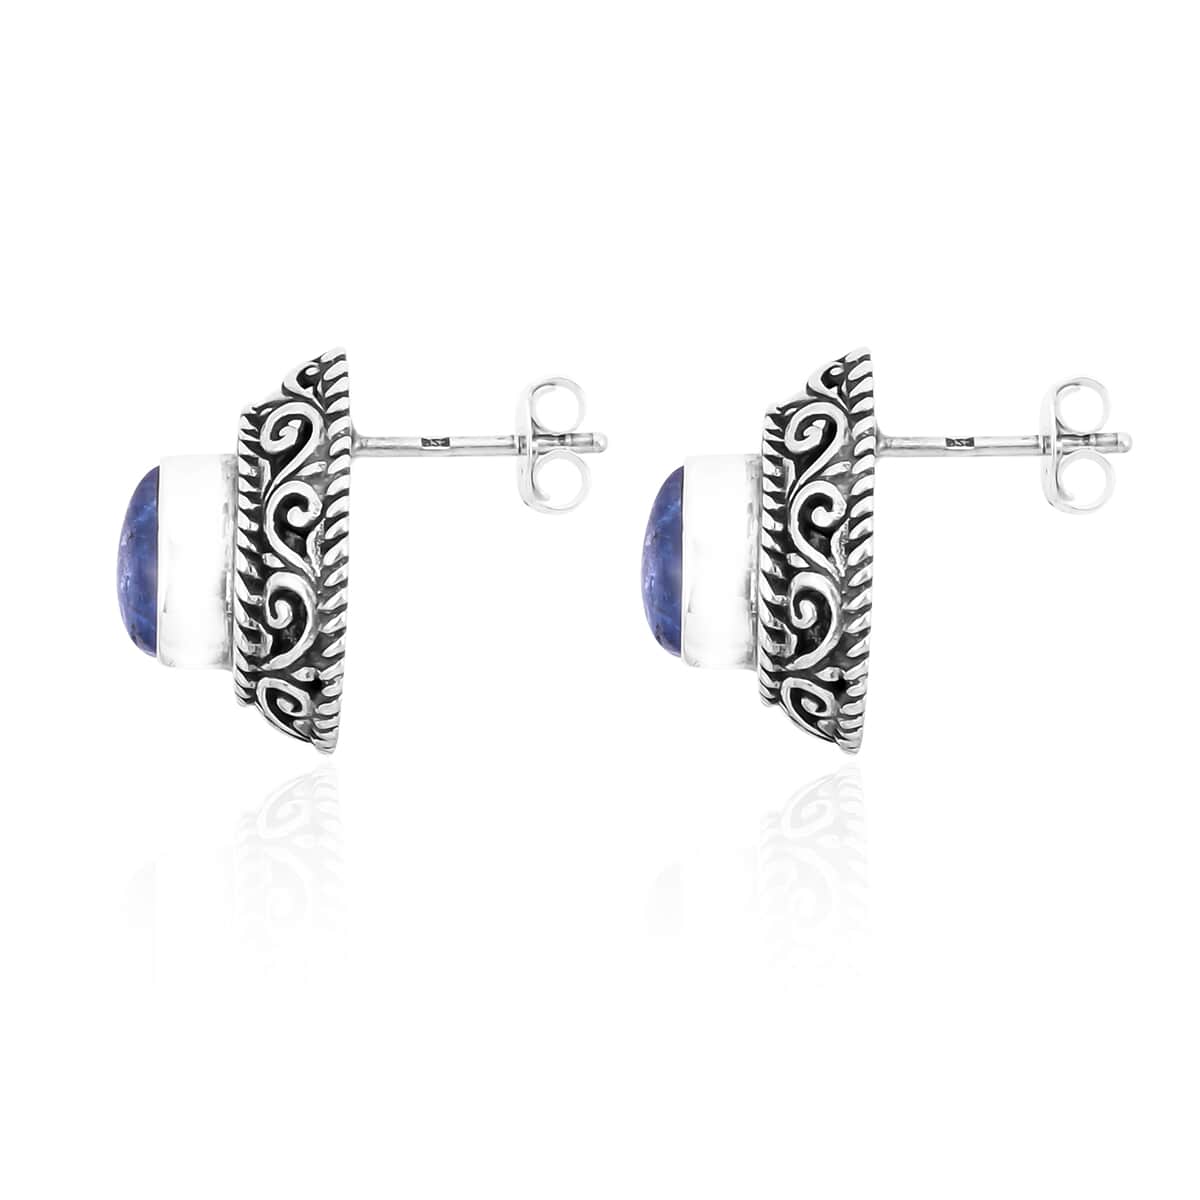 BALI LEGACY Tanzanite Stud Earrings in Sterling Silver 2.25 ctw image number 3